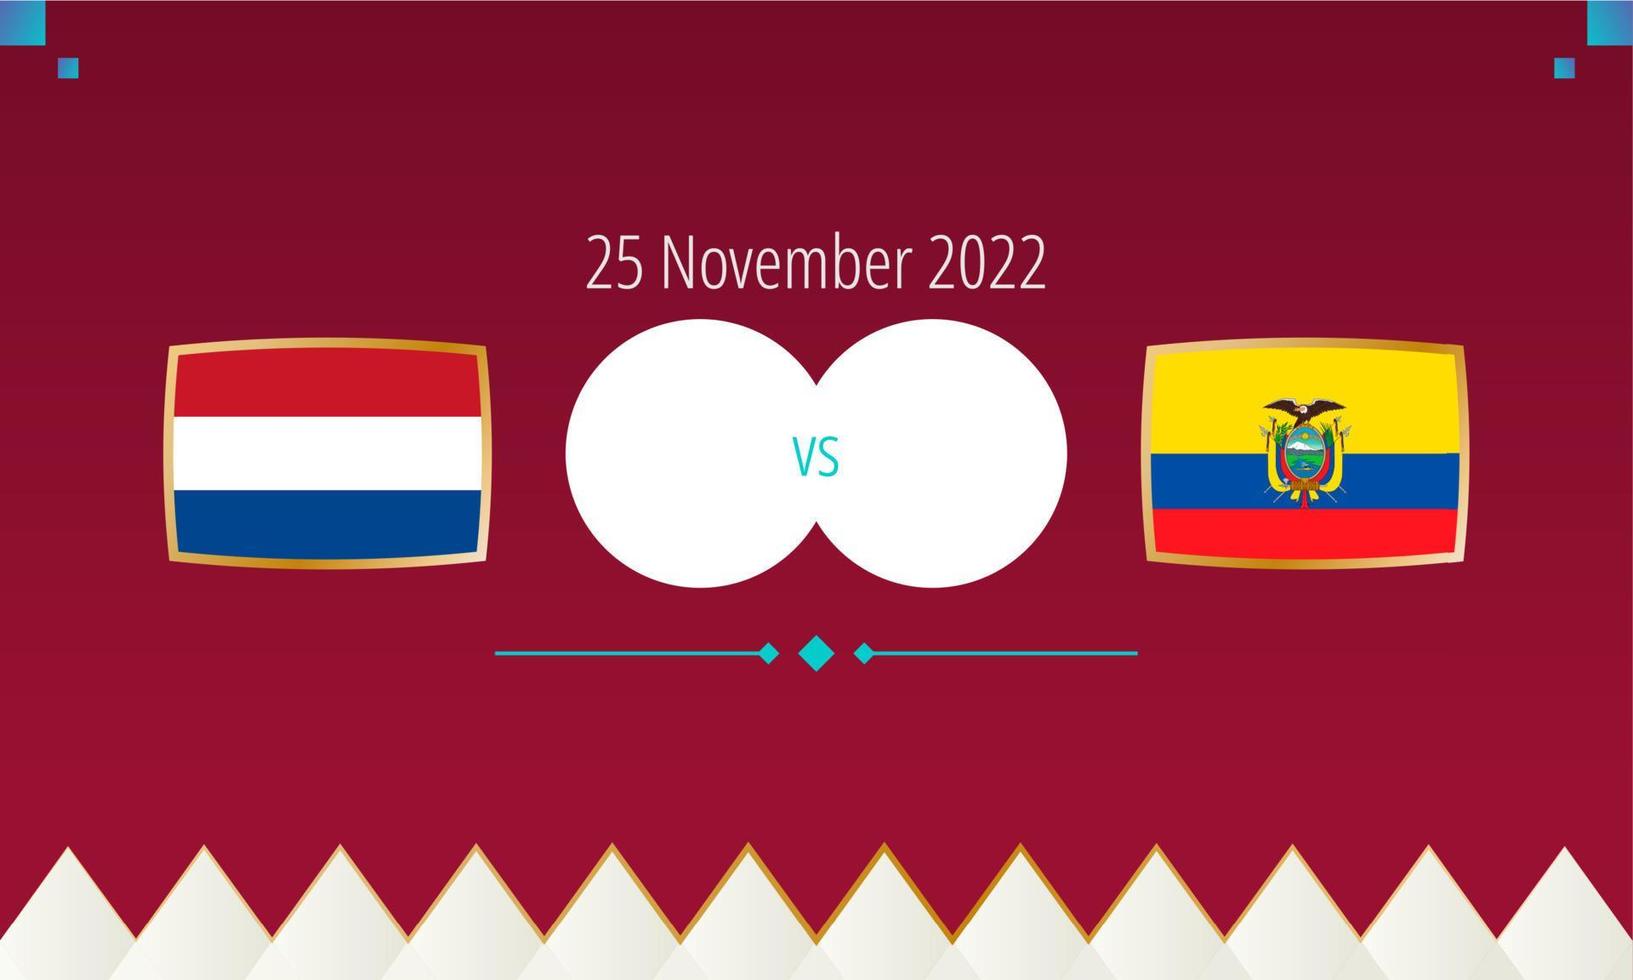 nederländerna mot ecuador fotboll match, internationell fotboll konkurrens 2022. vektor